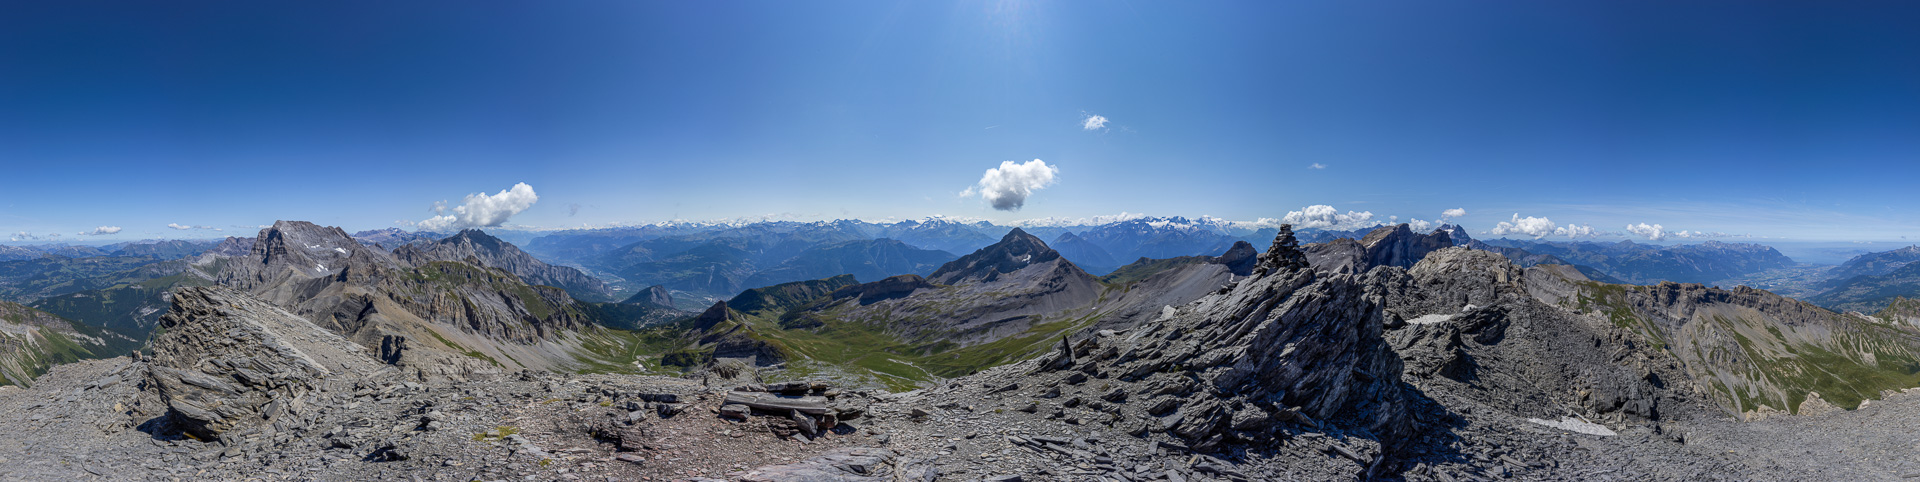 Ein weiterer der schönen Alpinwanderberge in der Muveran-Gruppe - hier das Gipfelpanorama